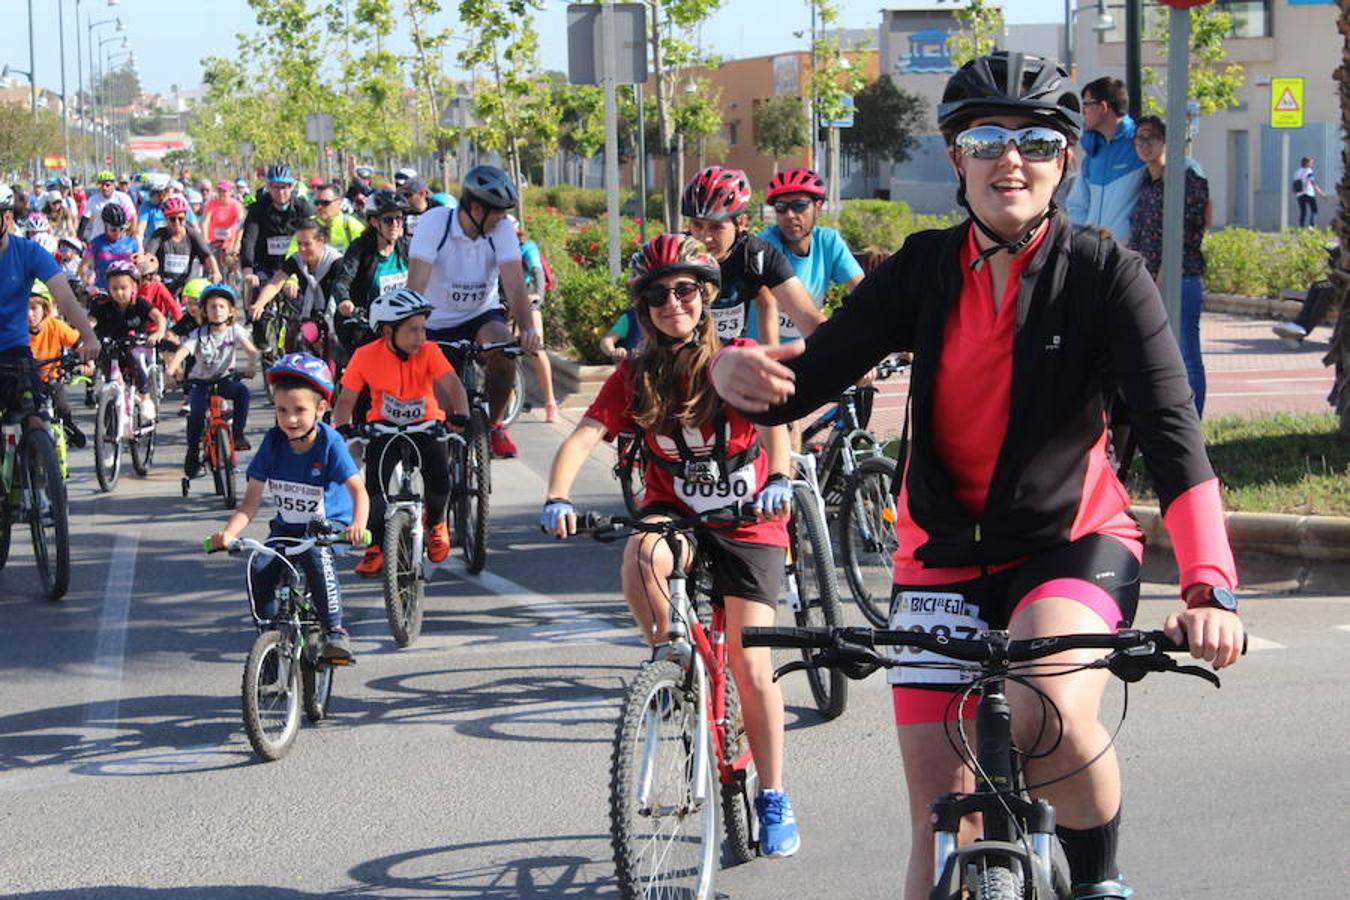 Cerca de un millar de personas participaron en la tarde de ayer en el Día de la Bicicleta del núcleo de El Ejido. Un evento que volvió a subir sobre las dos ruedas a abuelos, padres y nietos para disfrutar de una jornada de ocio y deporte en familia.